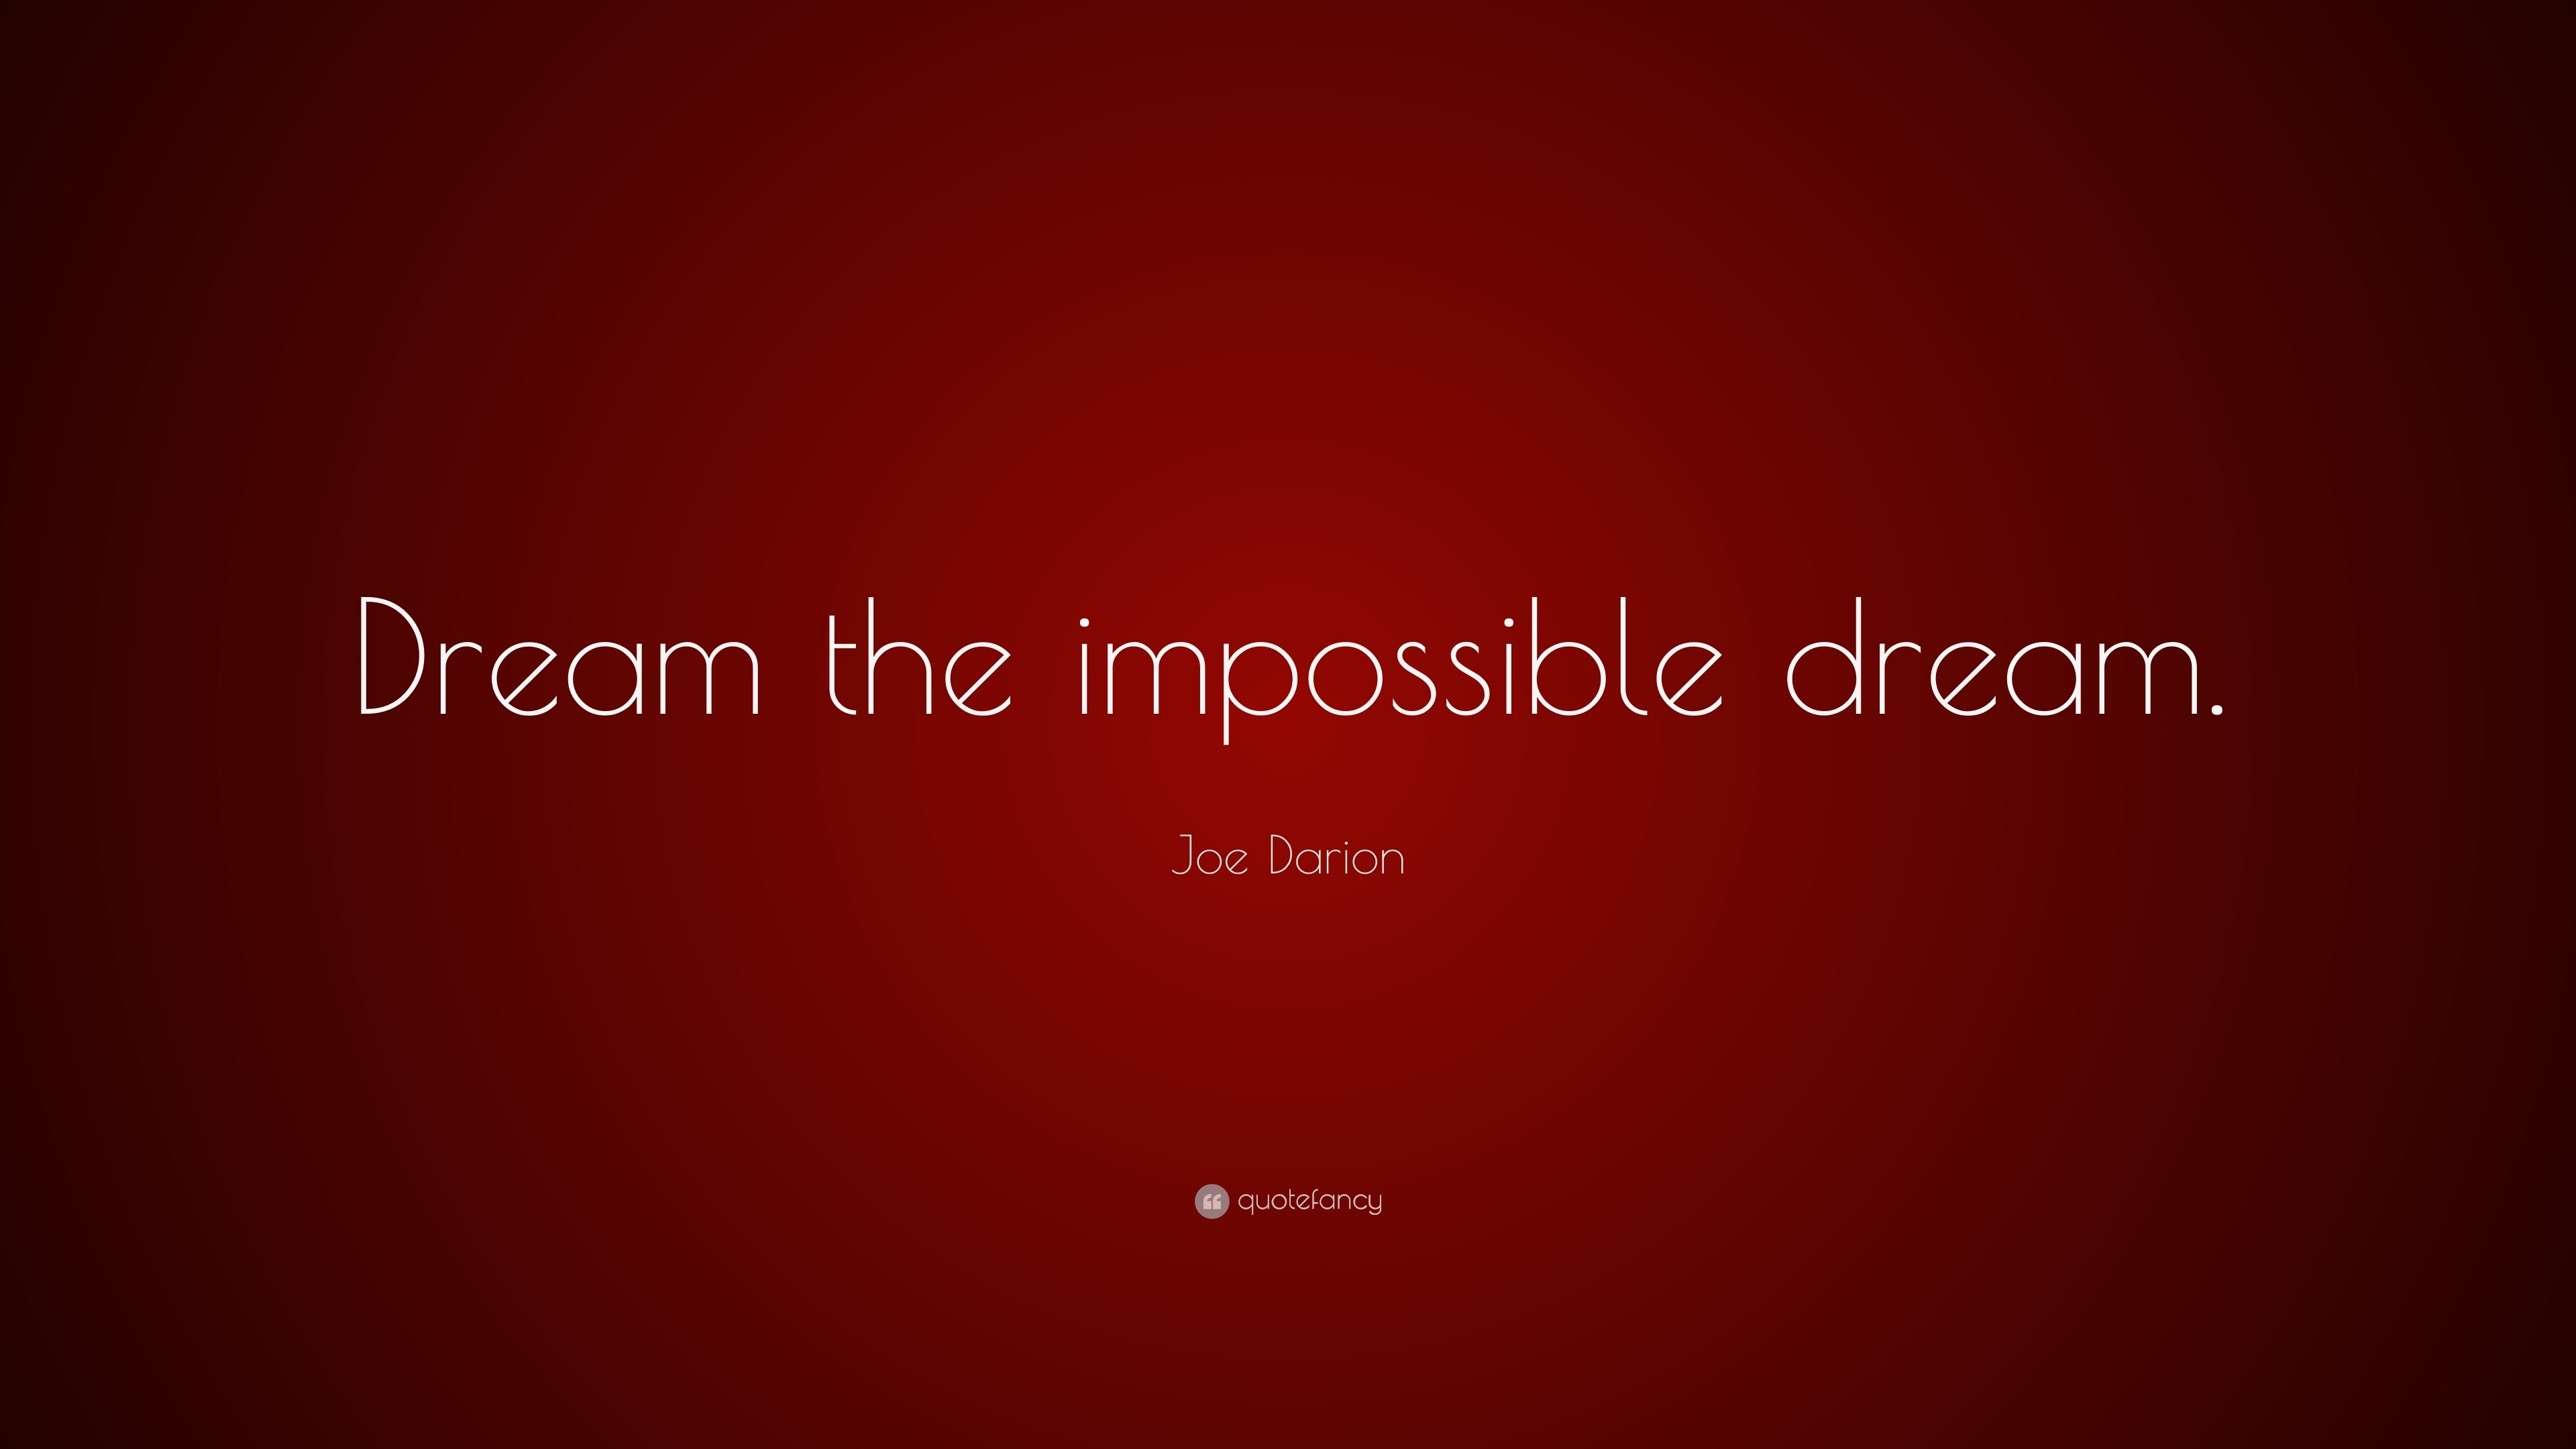 Joe Darion Quote: “Dream The Impossible Dream.”